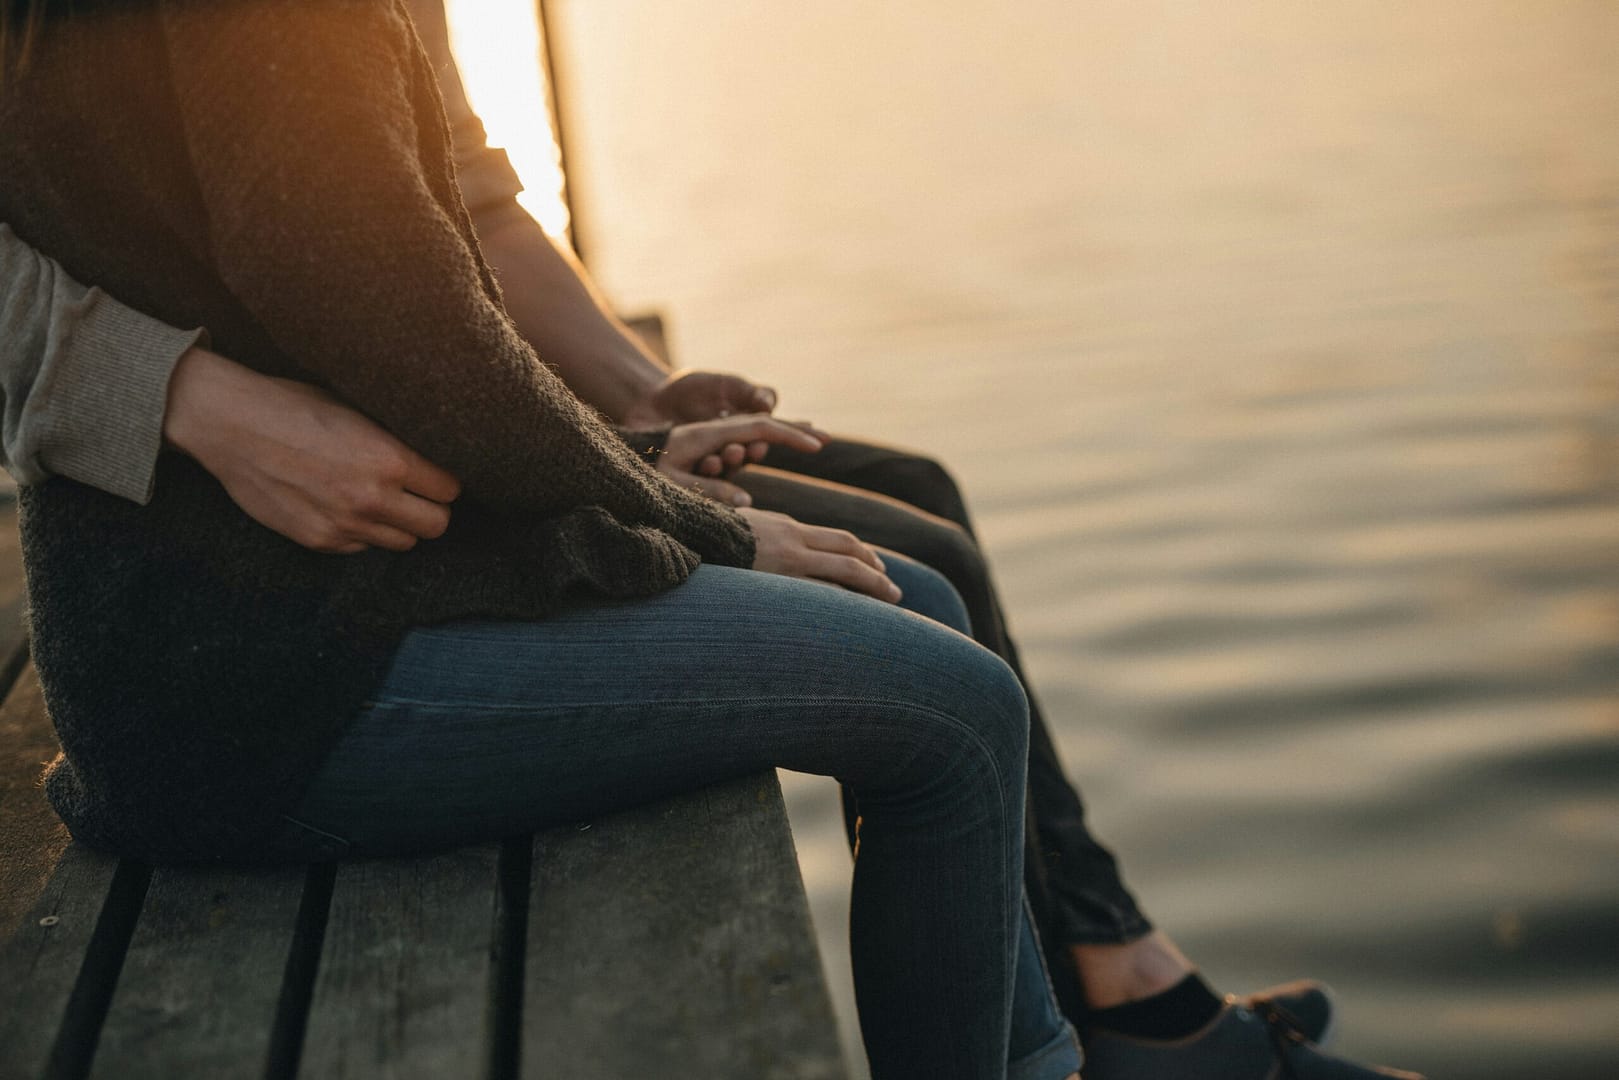 Eine Nahaufnahme von zwei Personen, die auf einem Steg sitzen. Im Mittelpunkt stehen ihre gefalteten Hände, die Vertrauen symbolisieren. Die untergehende Sonne spiegelt sich sanft im Wasser im Hintergrund.